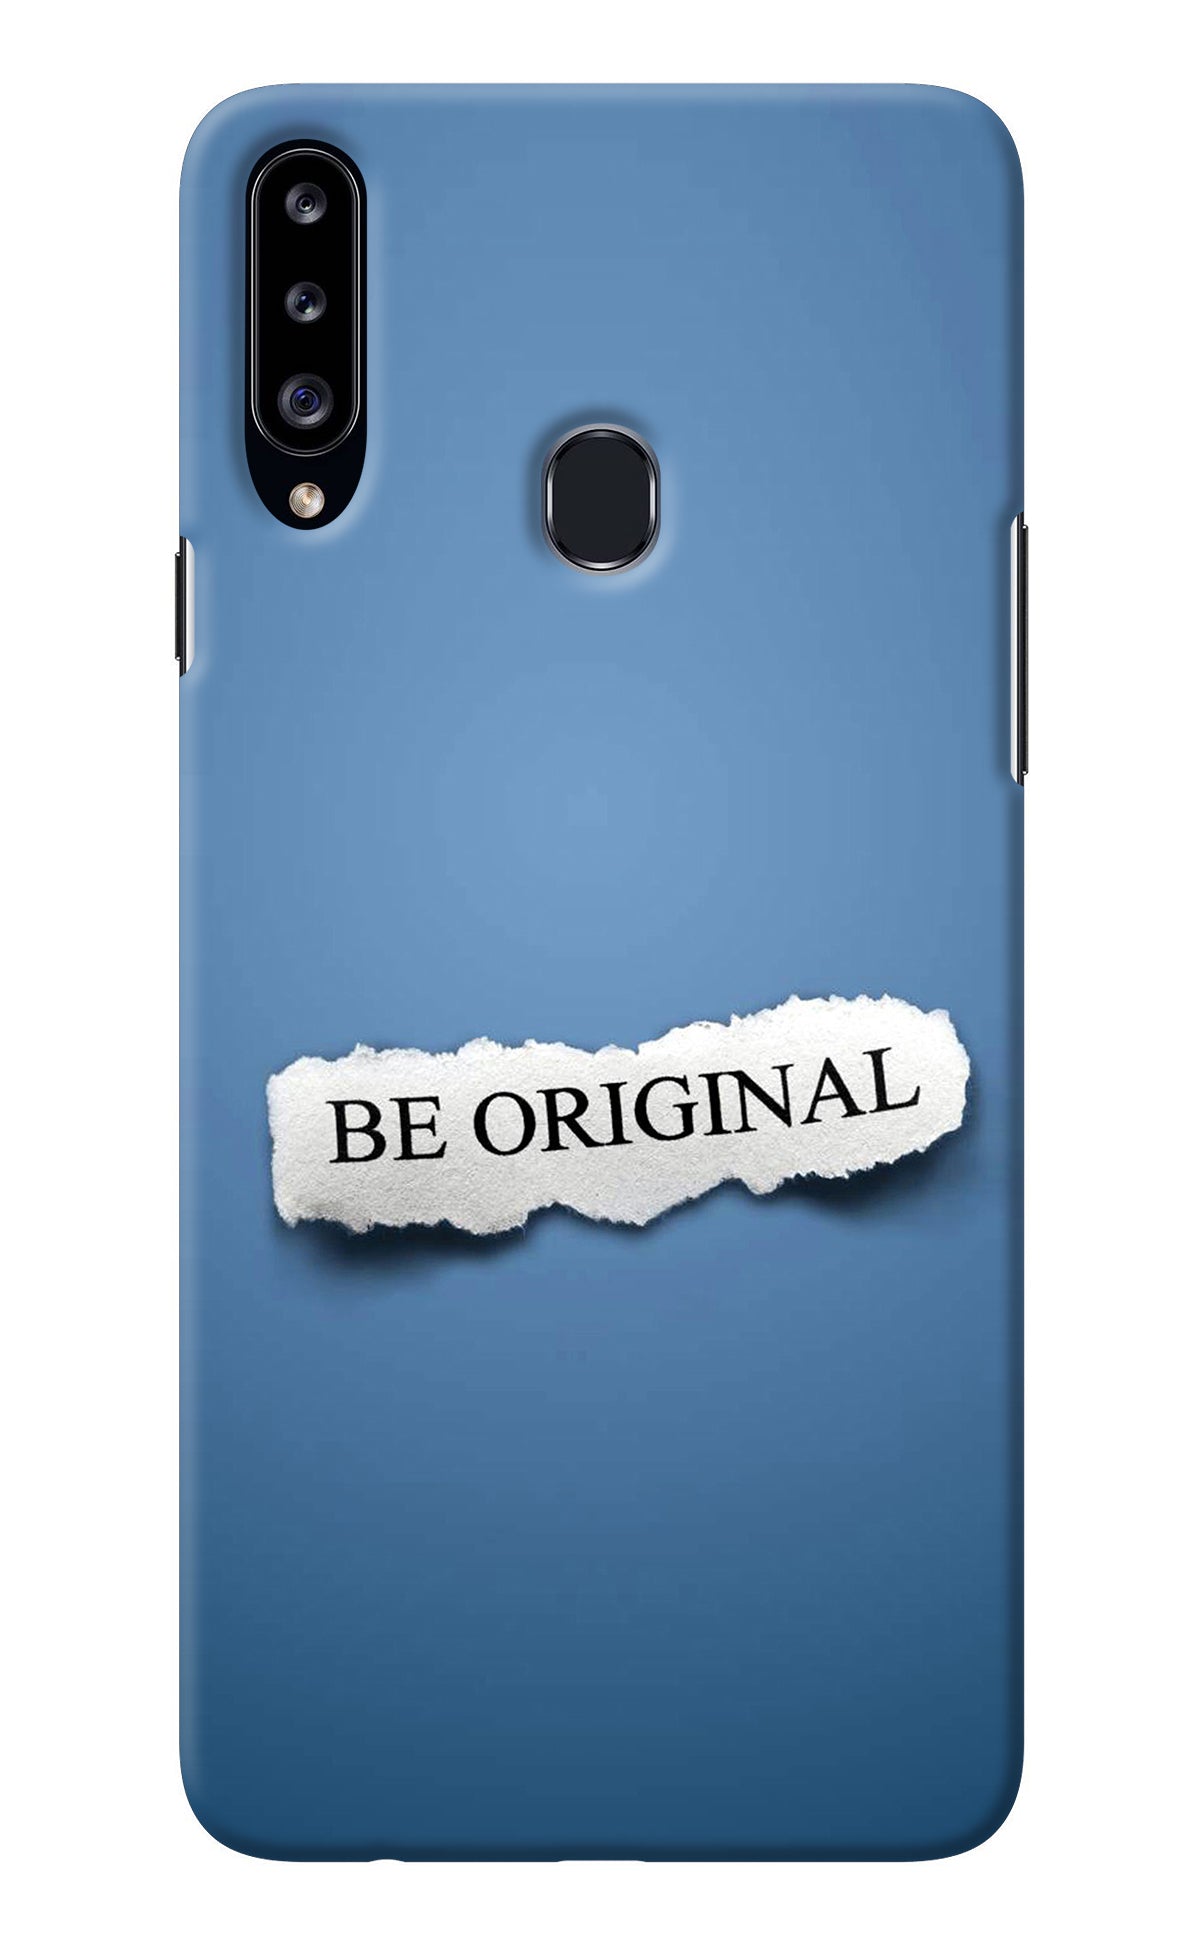 Be Original Samsung A20s Back Cover